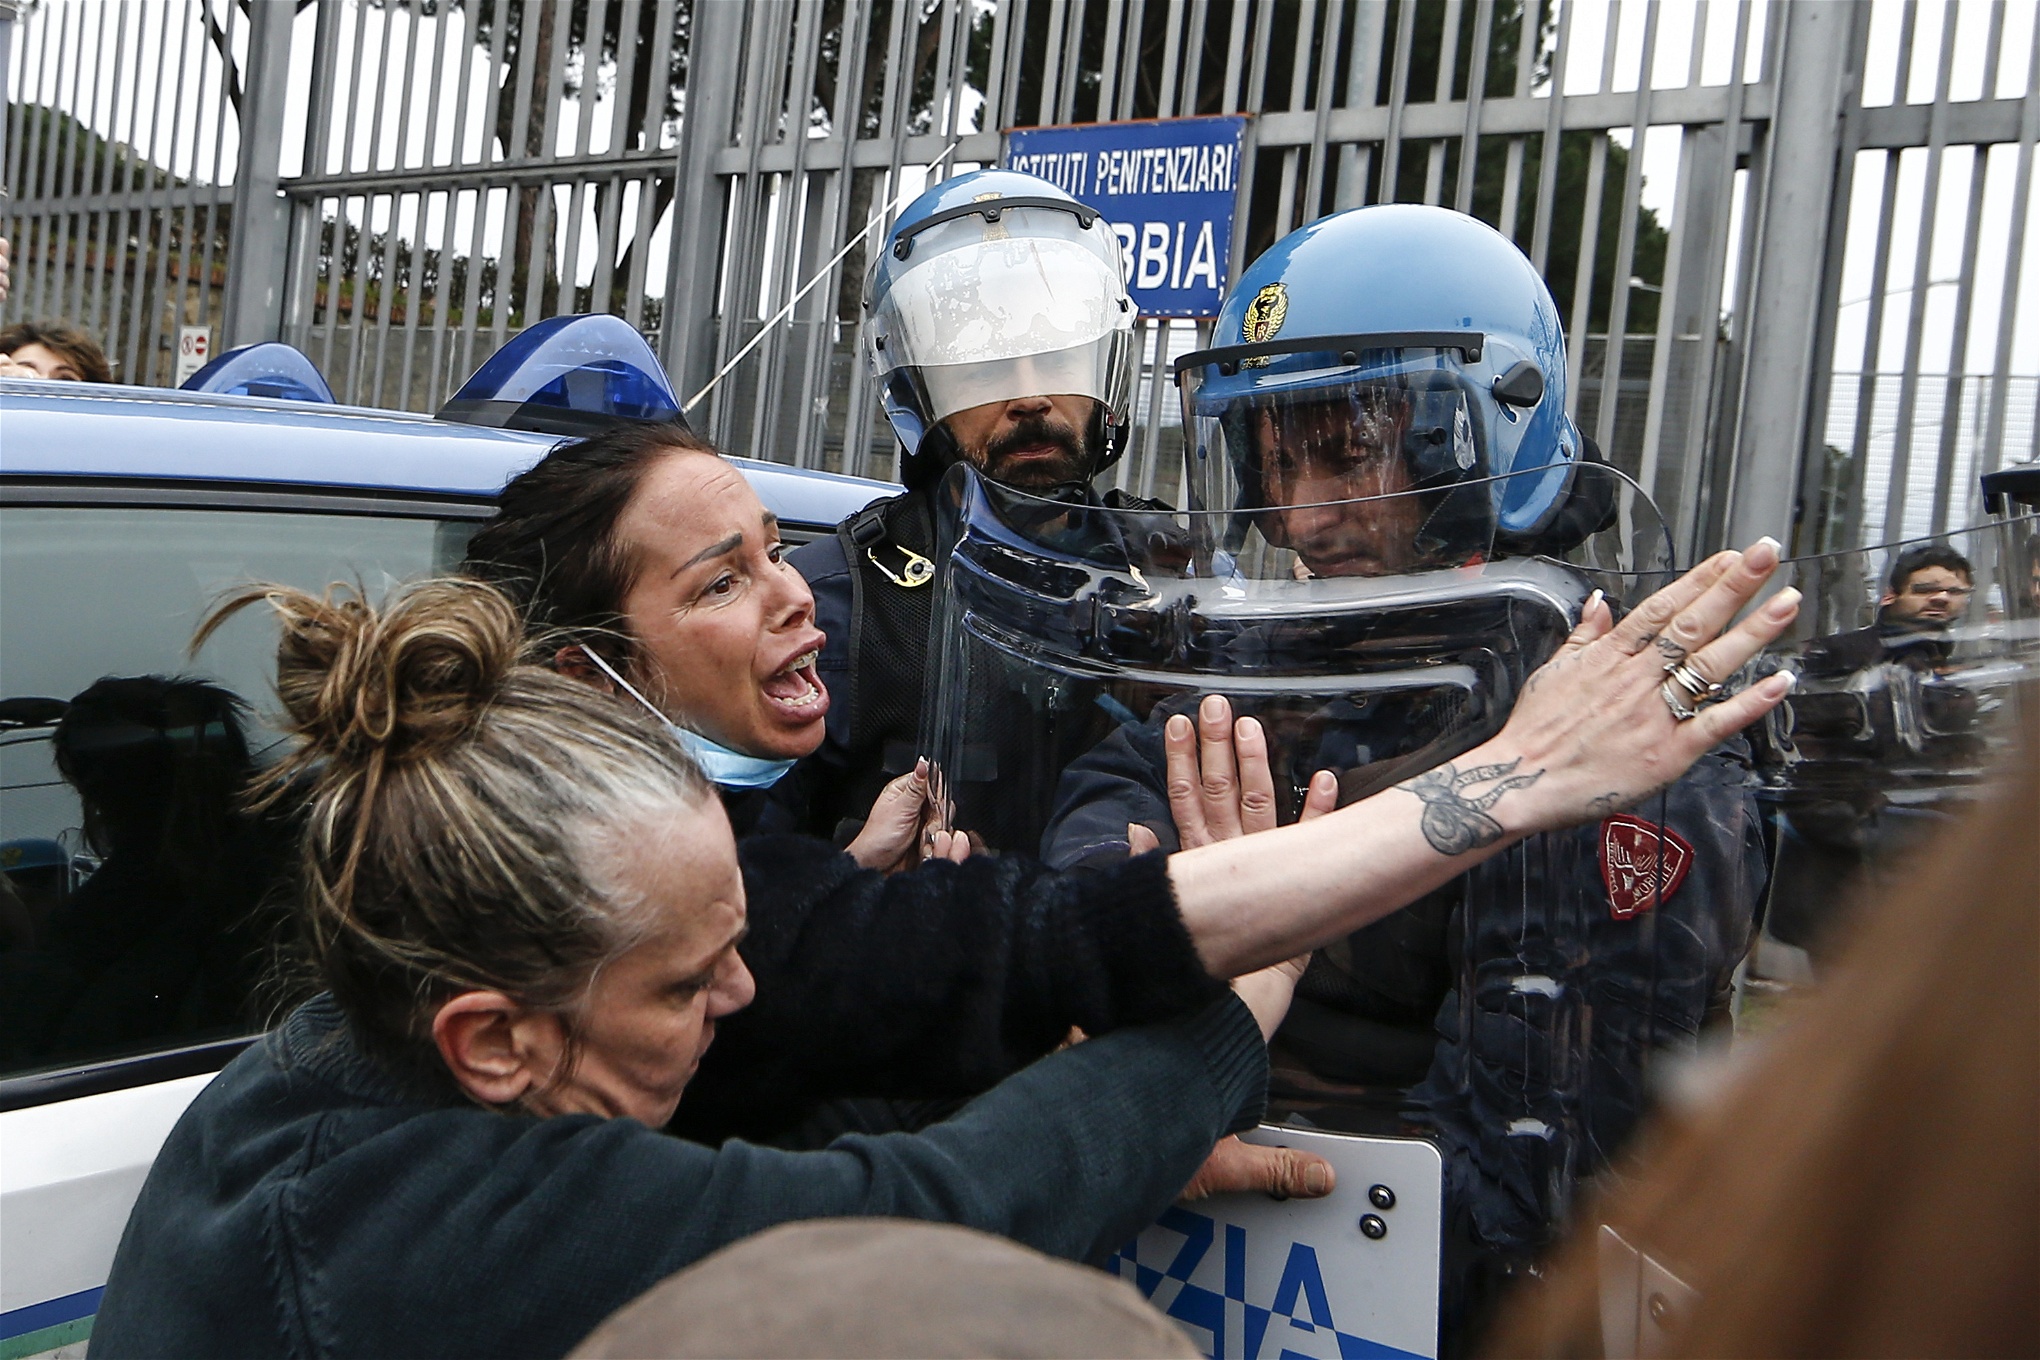 Anhöriga demonstrerar utanför fängelset Rebibbia i Rom. Foto: Cecilia Fabiano/TT